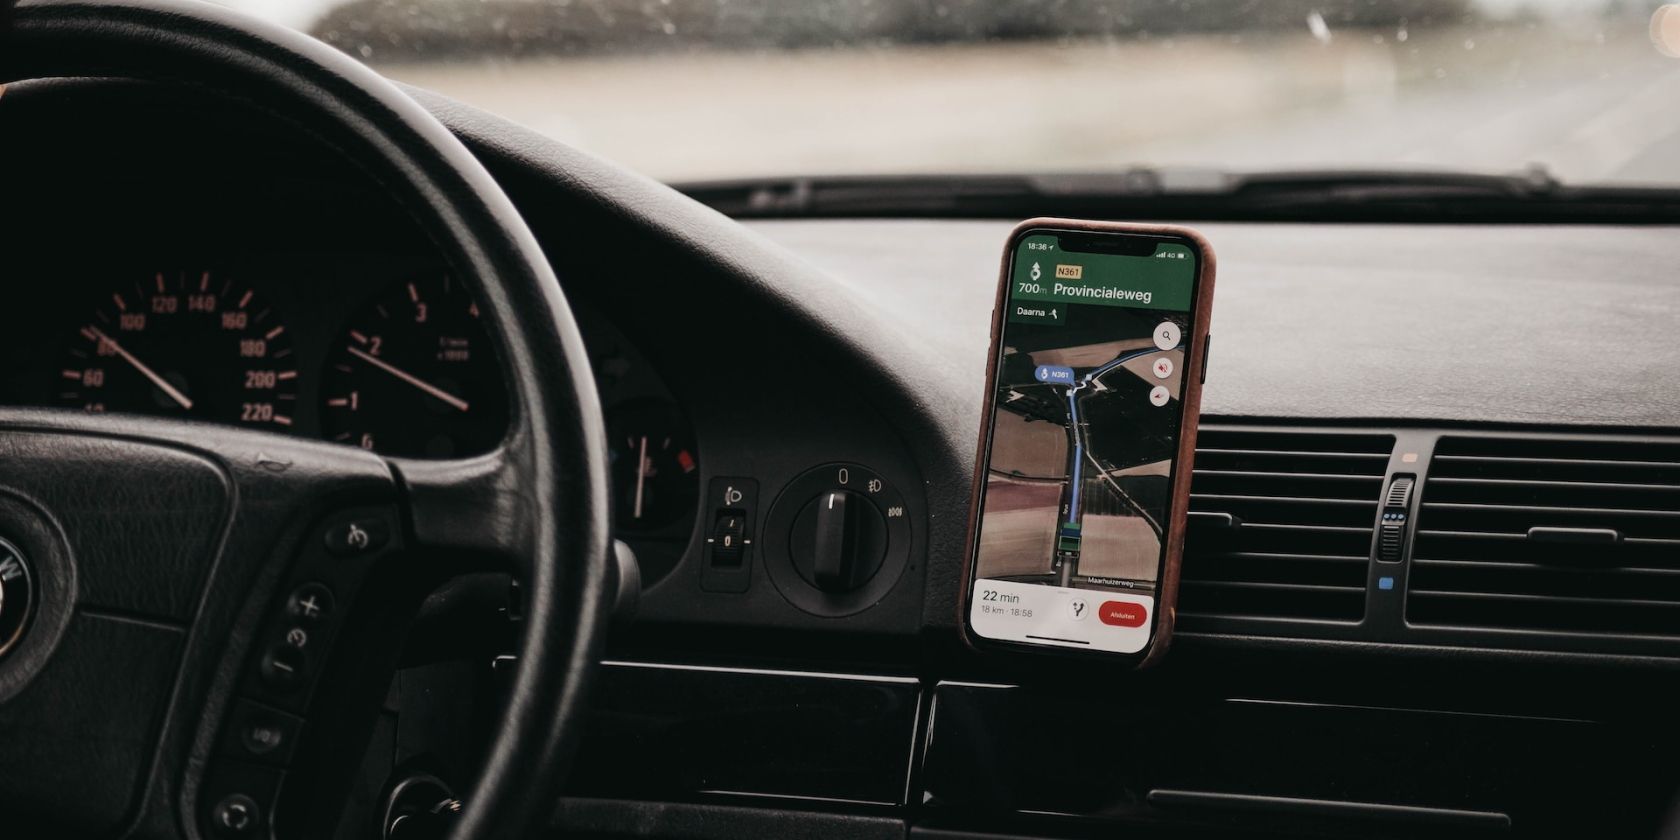 iPhone membantu pengemudi dengan navigasi